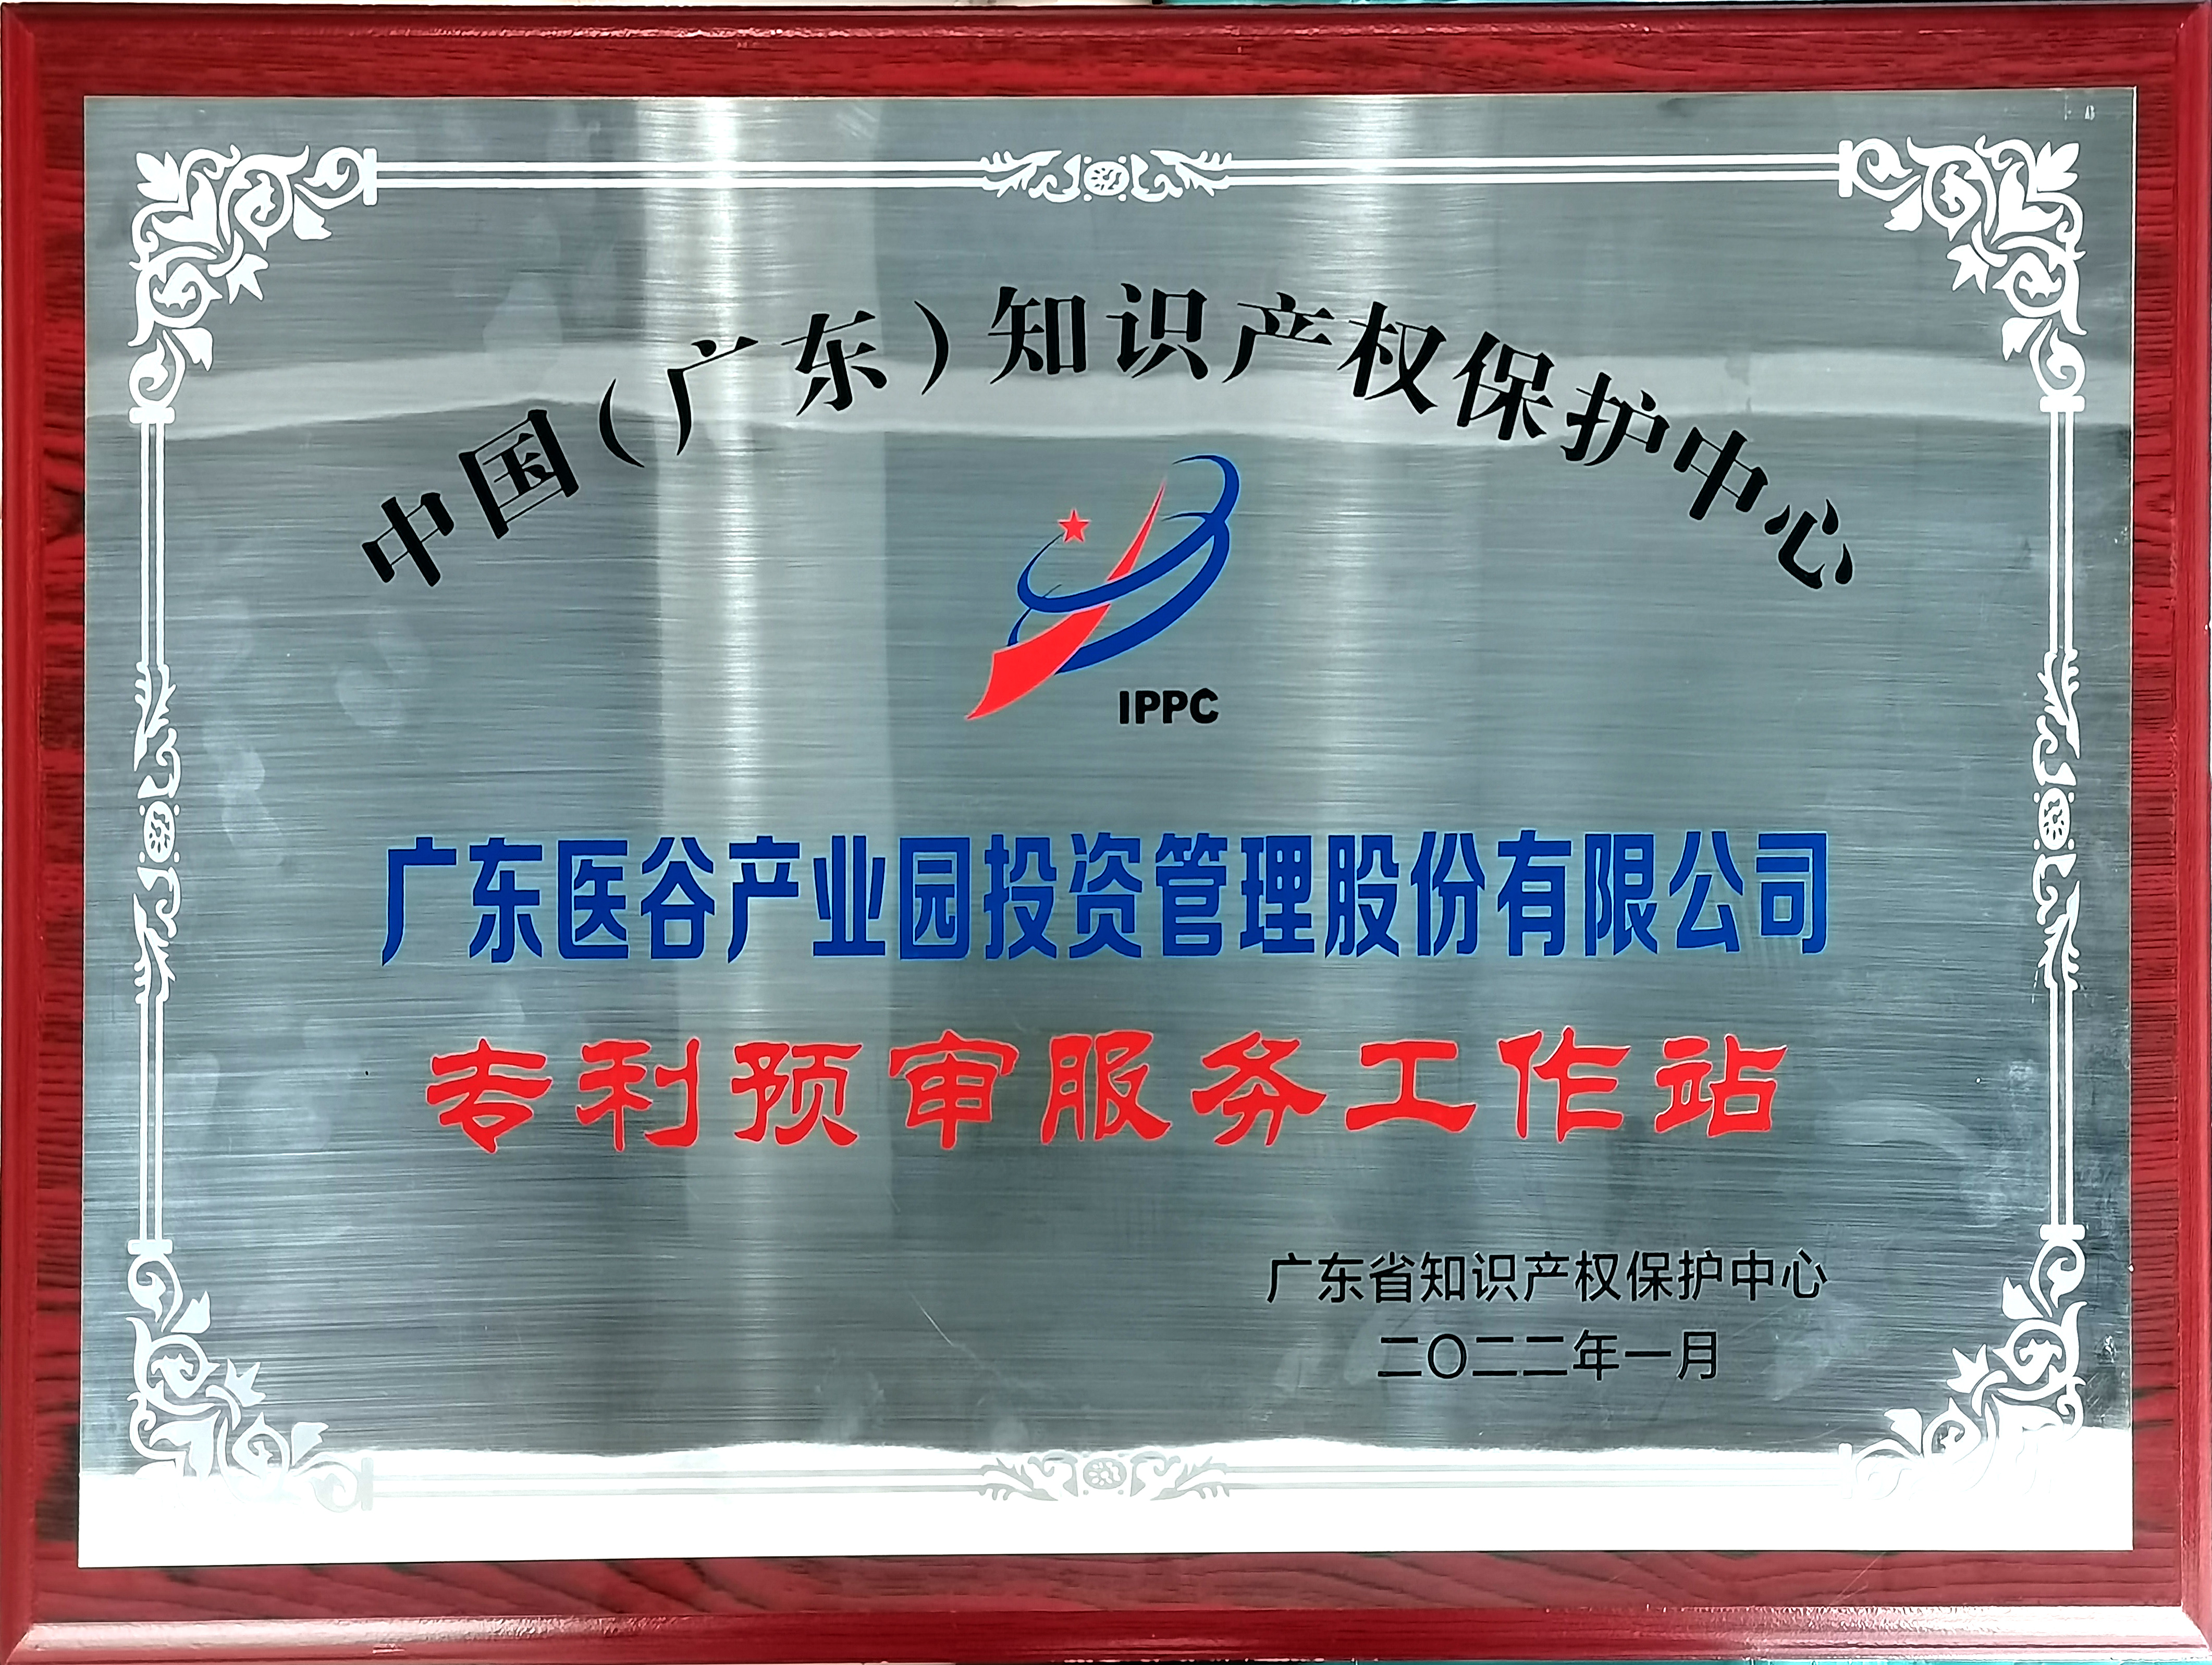 中国（广东）知识产权保护中心广东医谷专利预审服务工作站